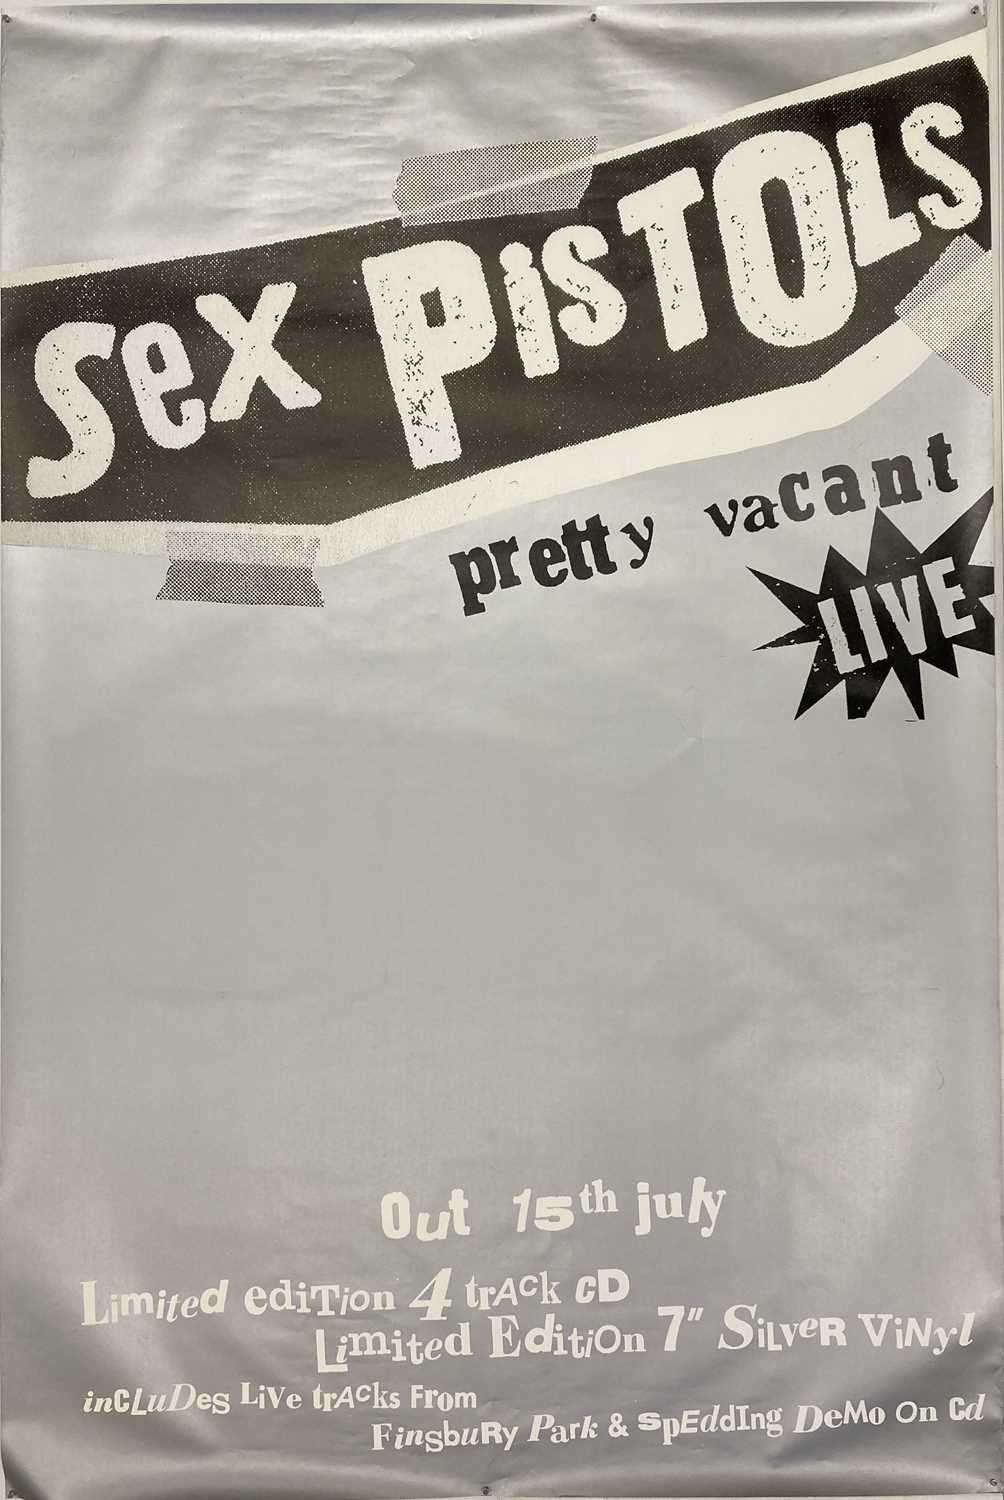 Lot 152 Sex Pistols Billboard Posters